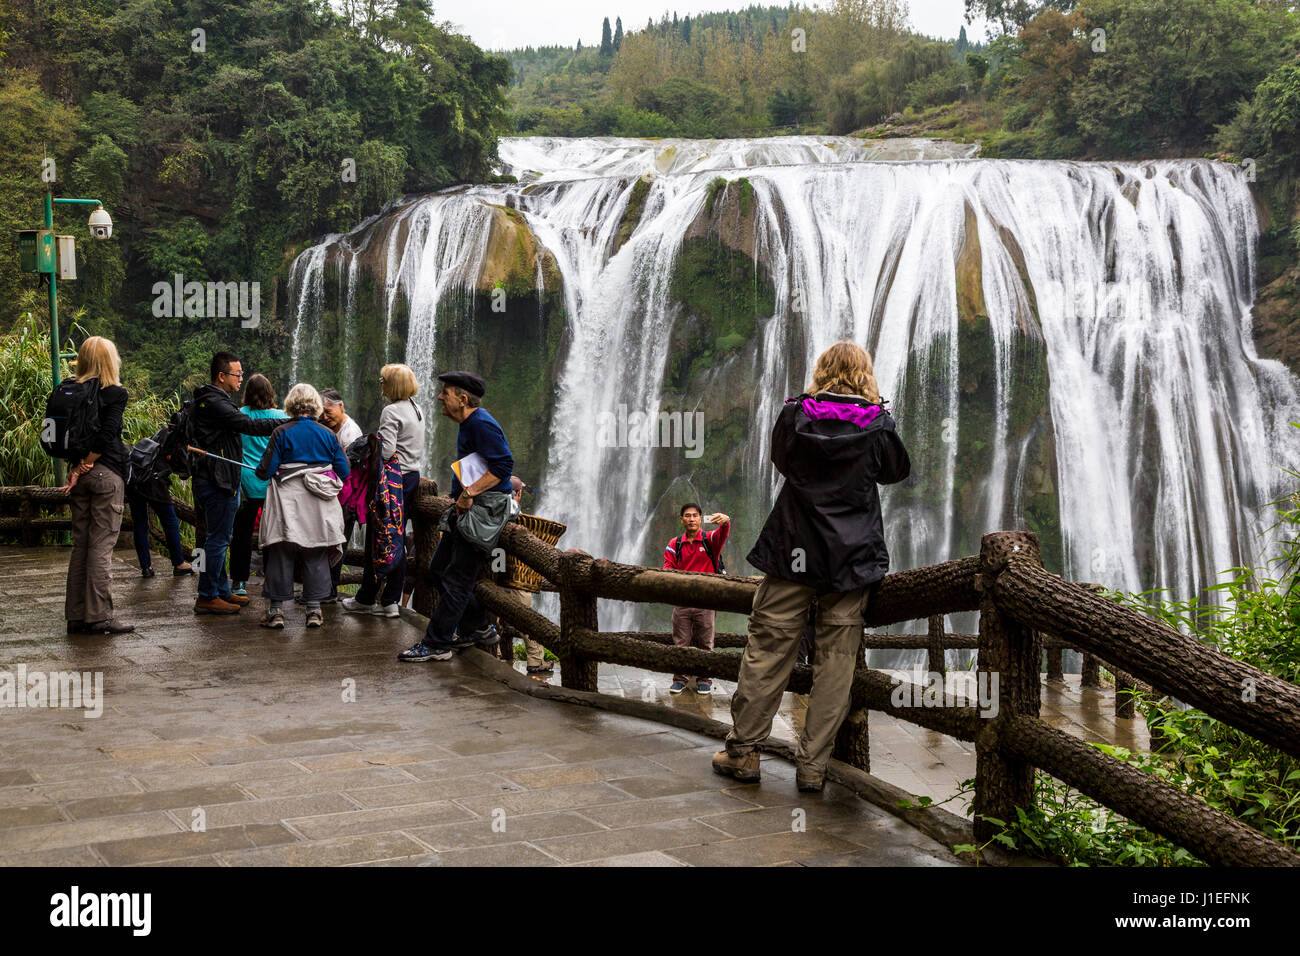 La province du Guizhou, en Chine. Les touristes à plate-forme d'observation, les fruits jaunes (arbre) Huangguoshu Waterfall. Banque D'Images